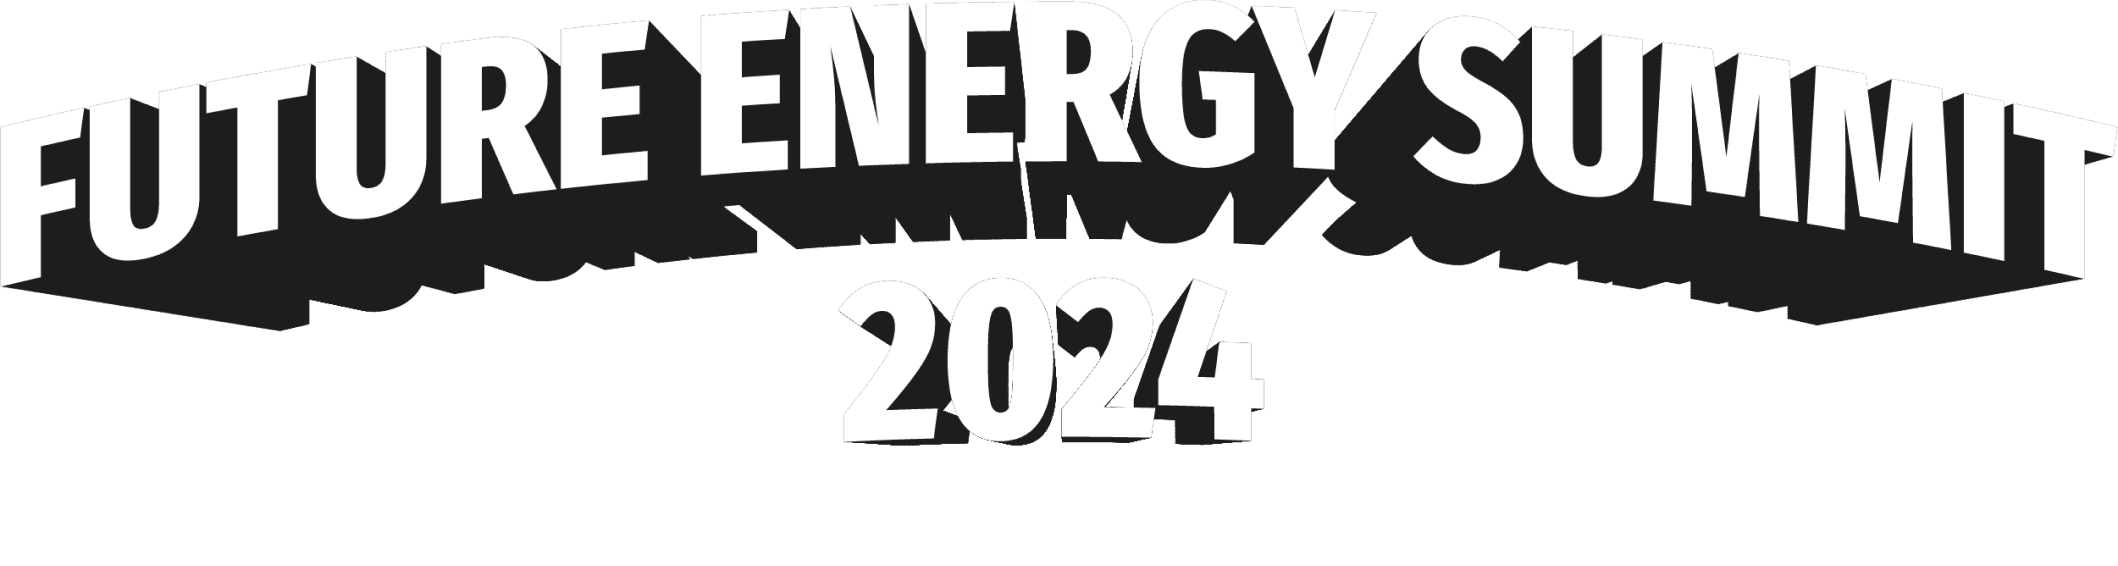 FUTURE ENERGY SUMMIT 2024